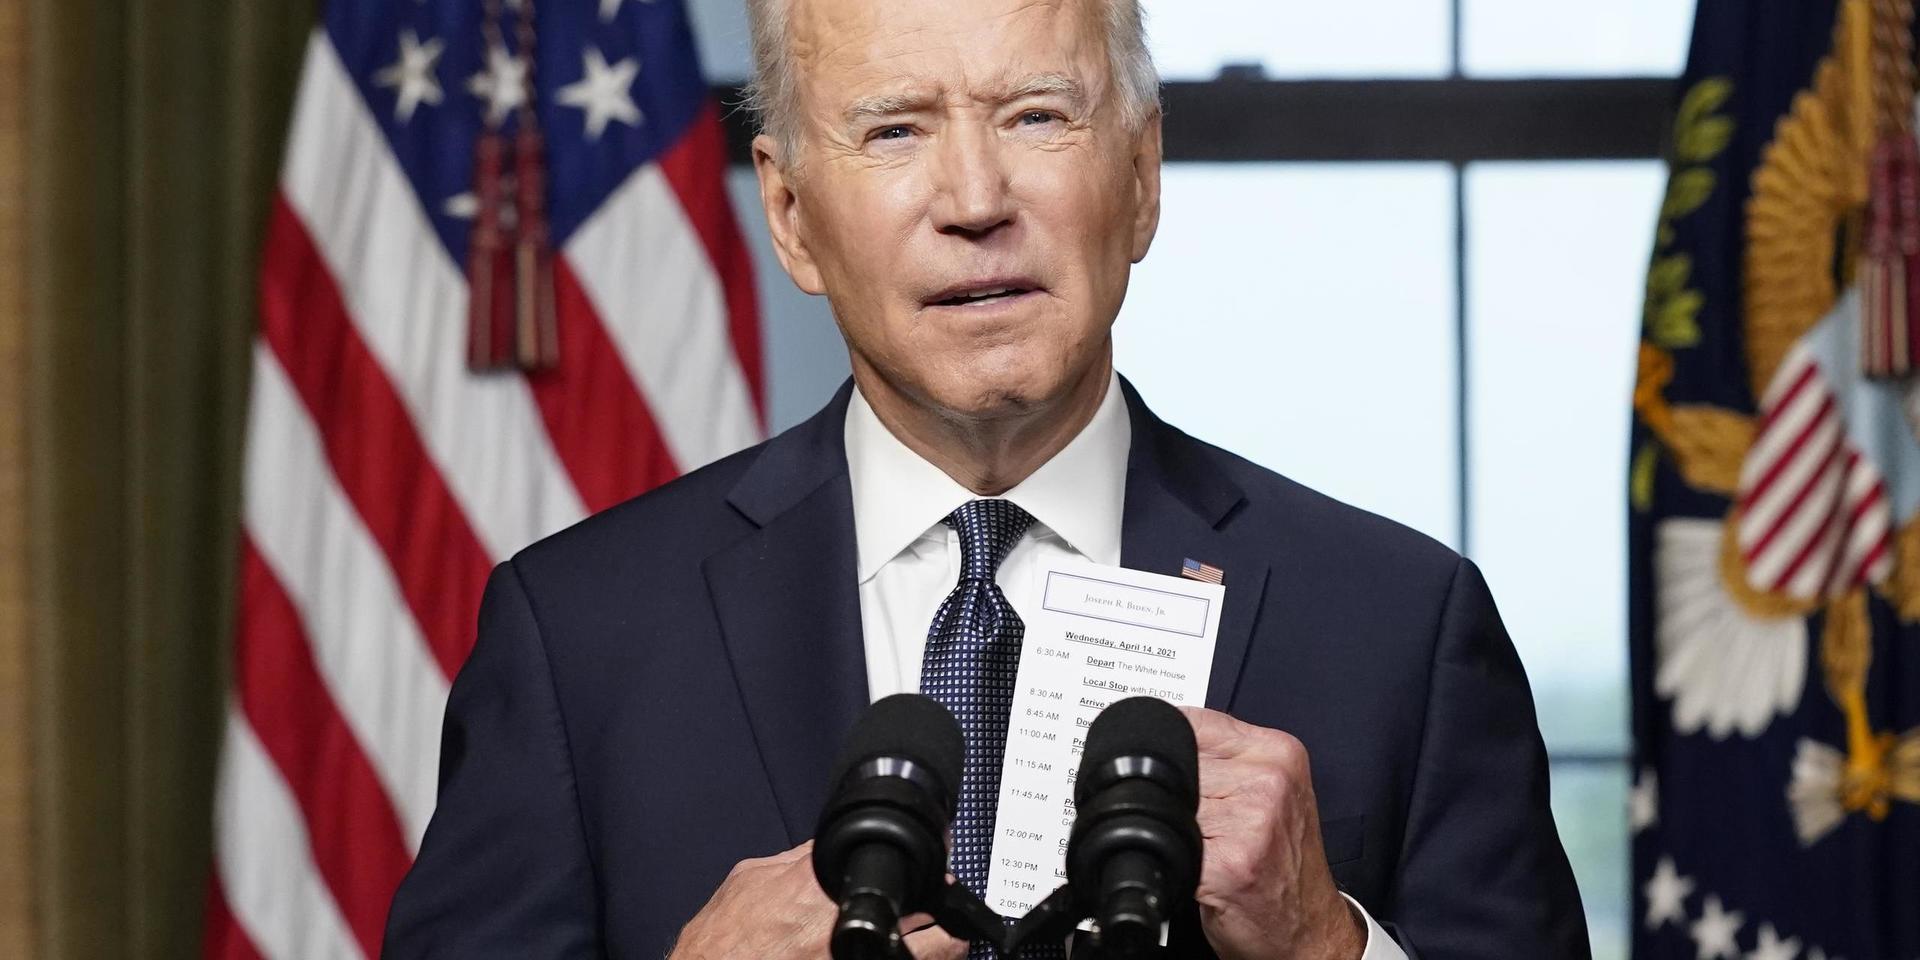 President Joe Biden tar fram sin minnesanteckning om antalet stupade.